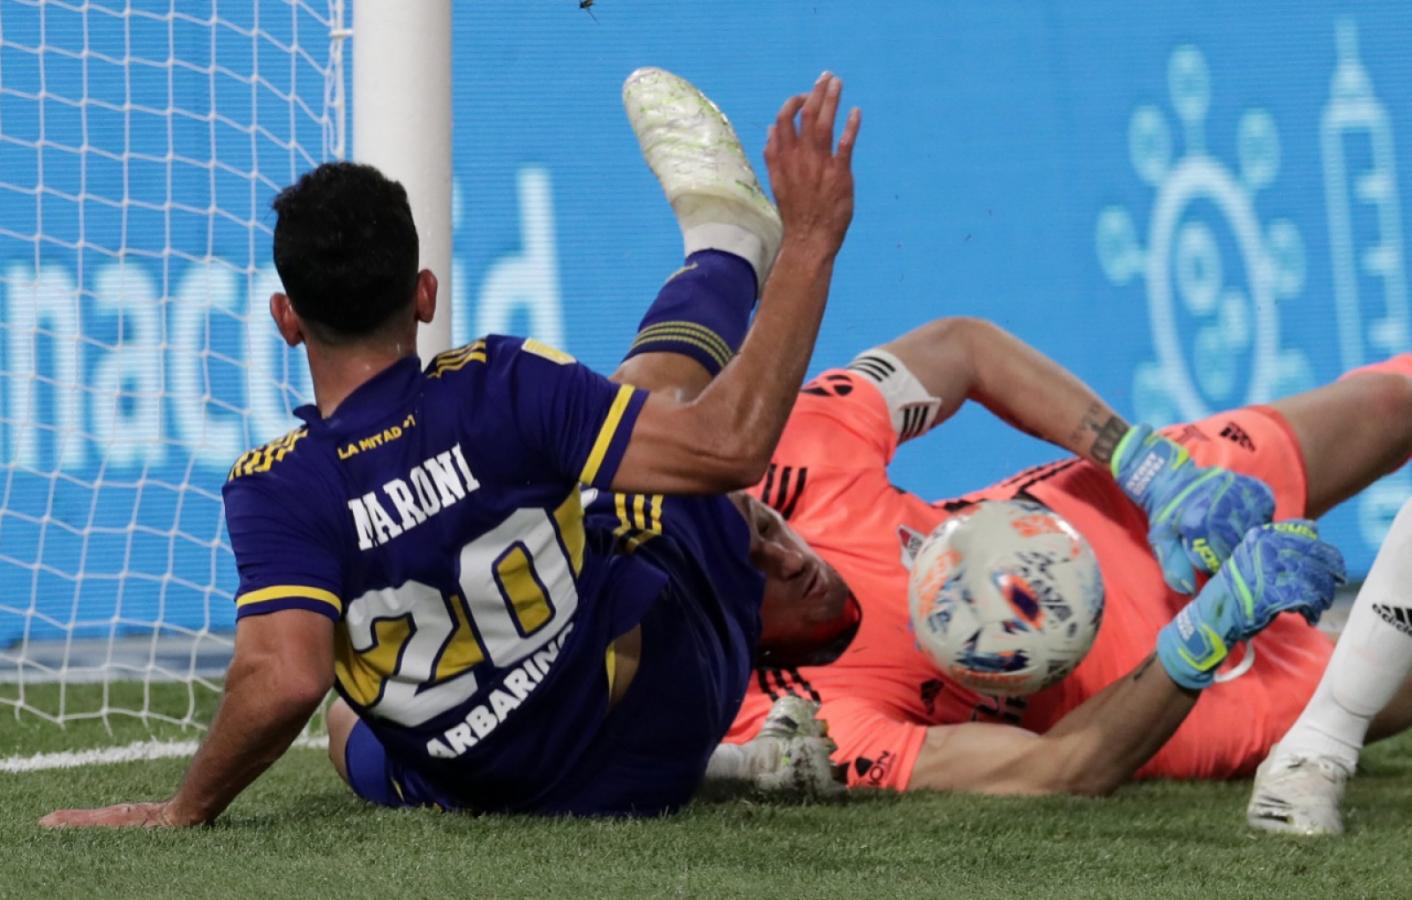 Imagen La gran reacción de Armani le ahogó el grito de gol a Maroni (ALEJANDRO PAGNI / POOL / AFP)